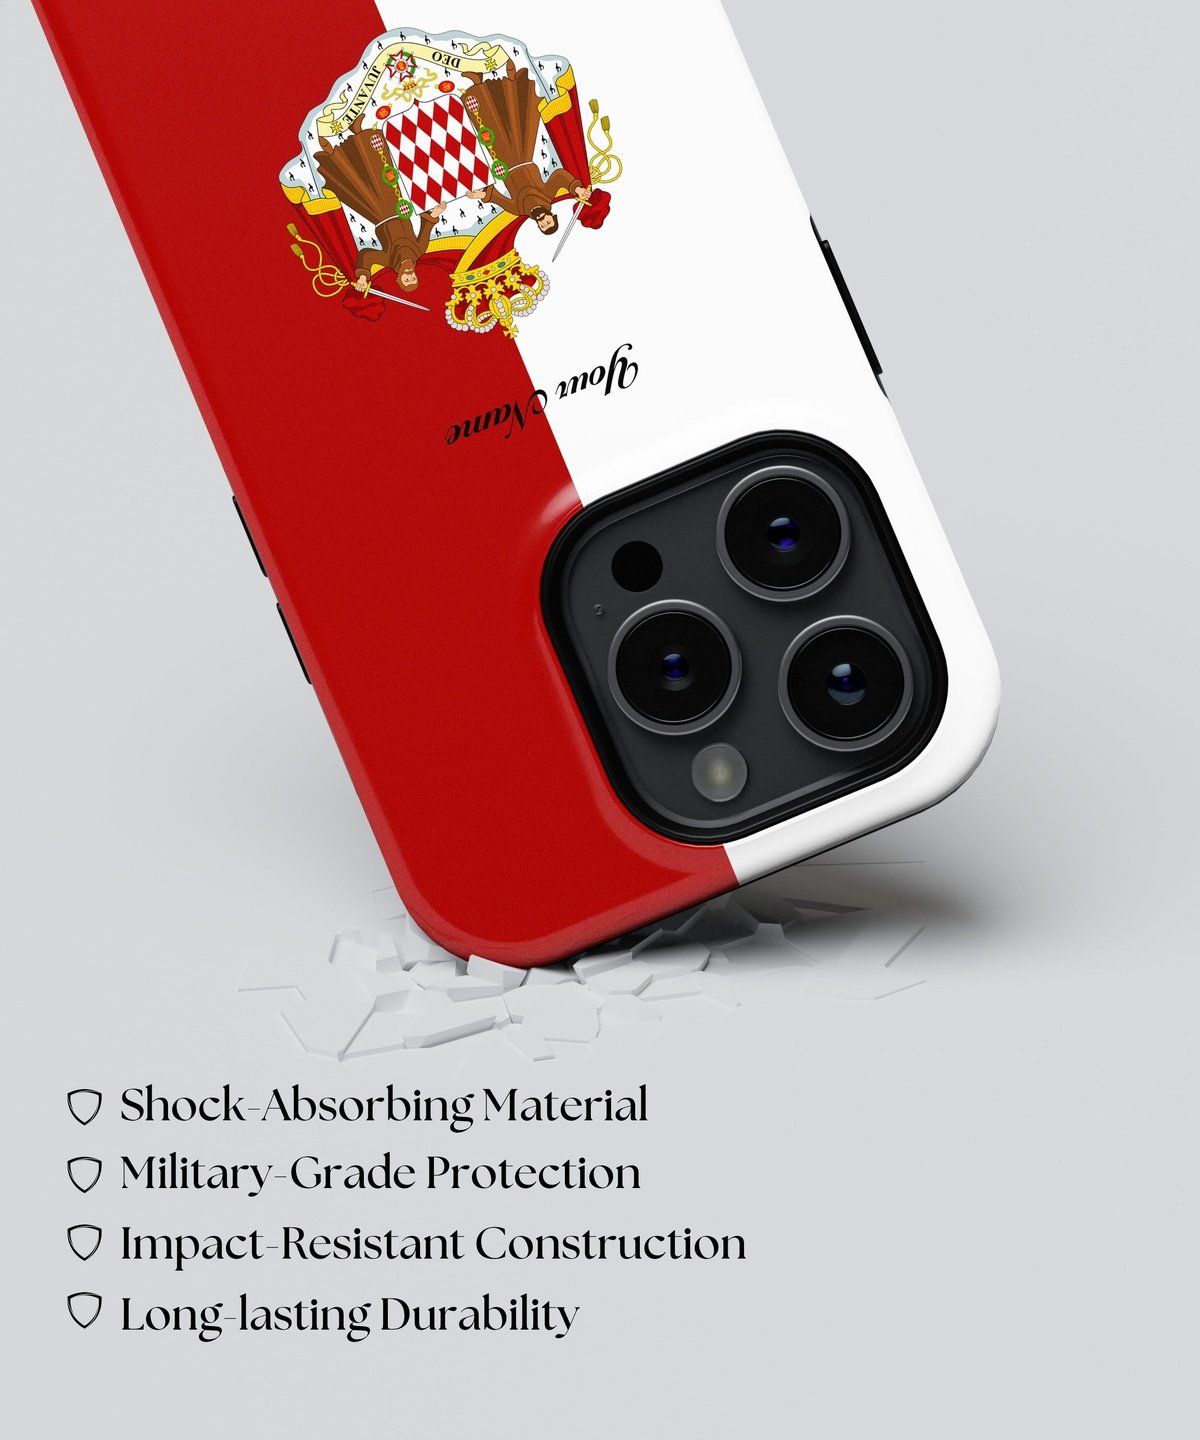 Monaco National Emblem - iPhone